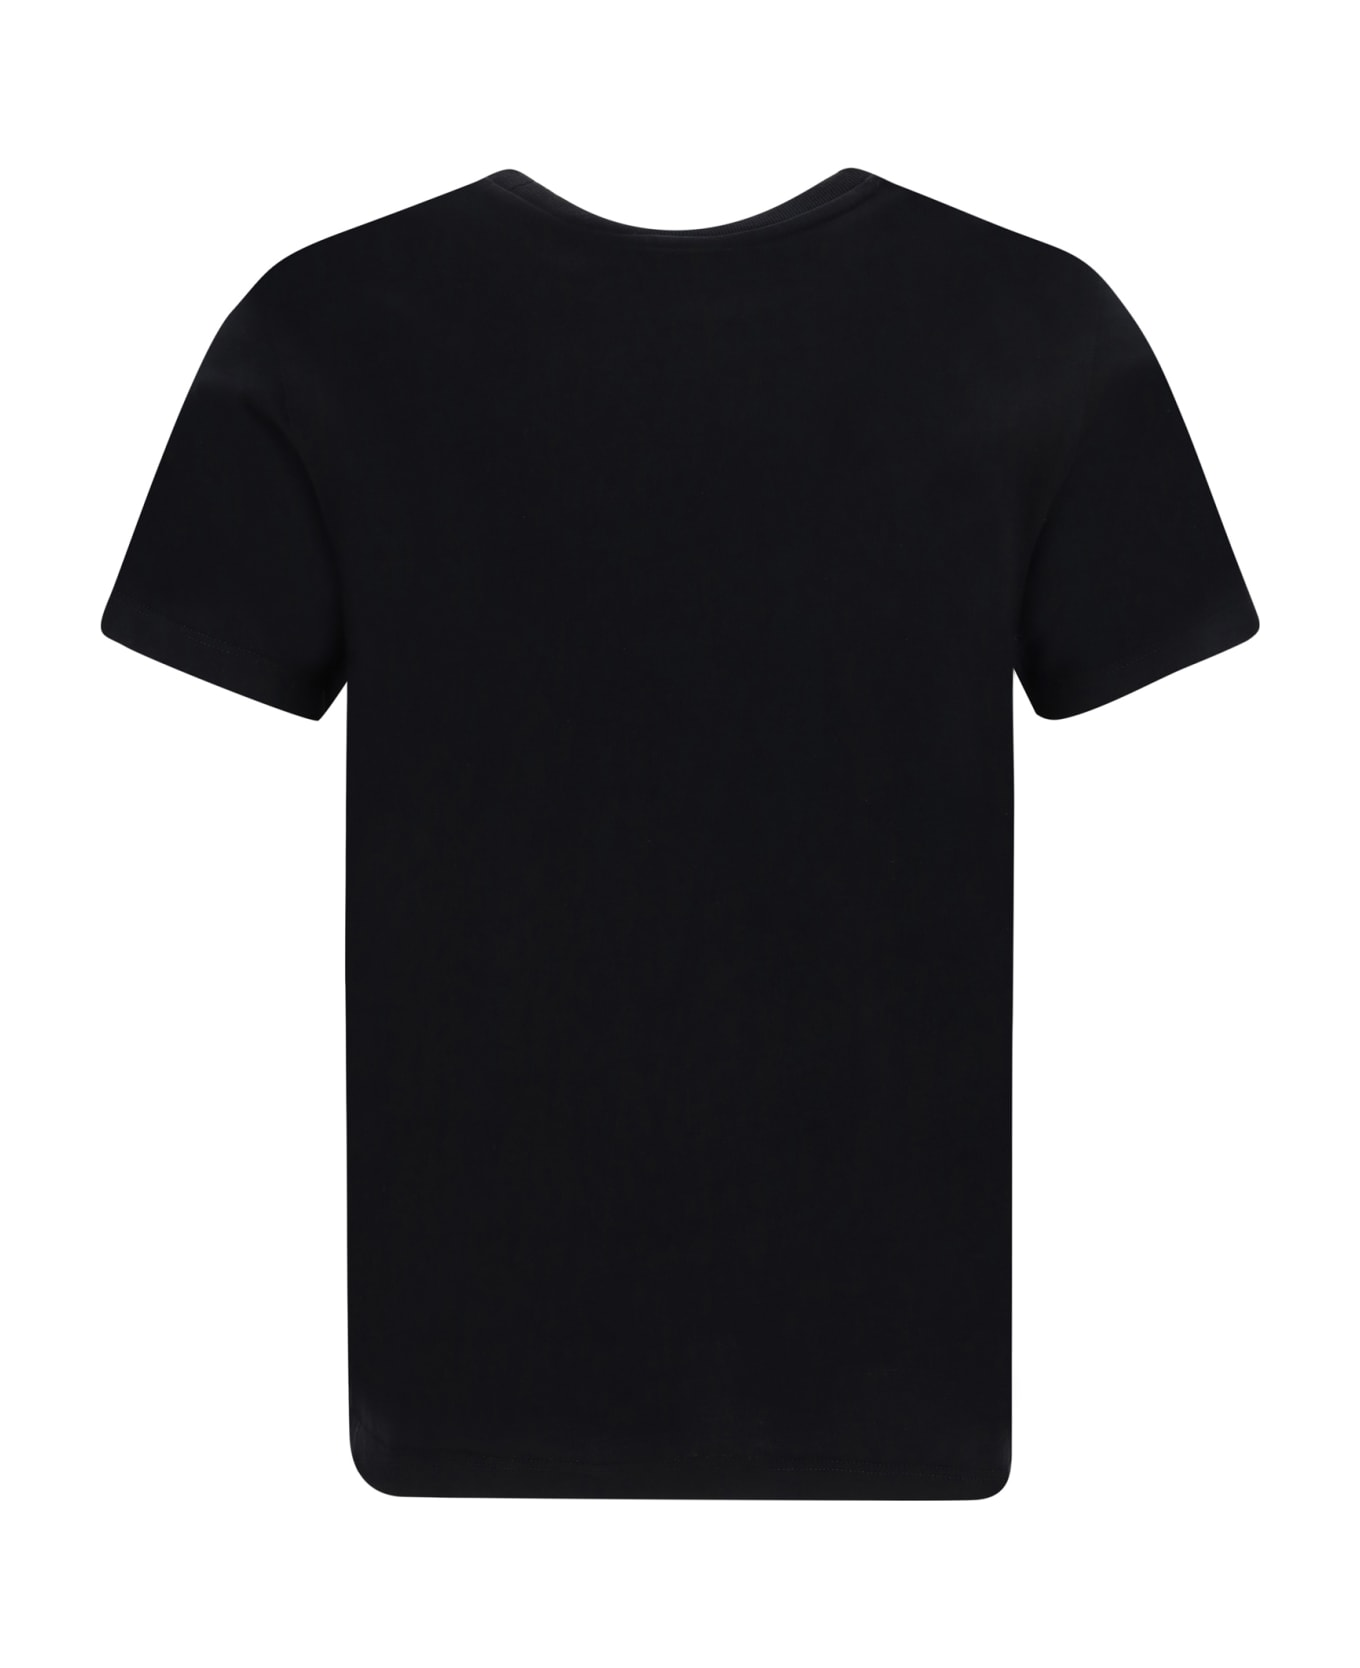 Maison Kitsuné T-shirt - Black